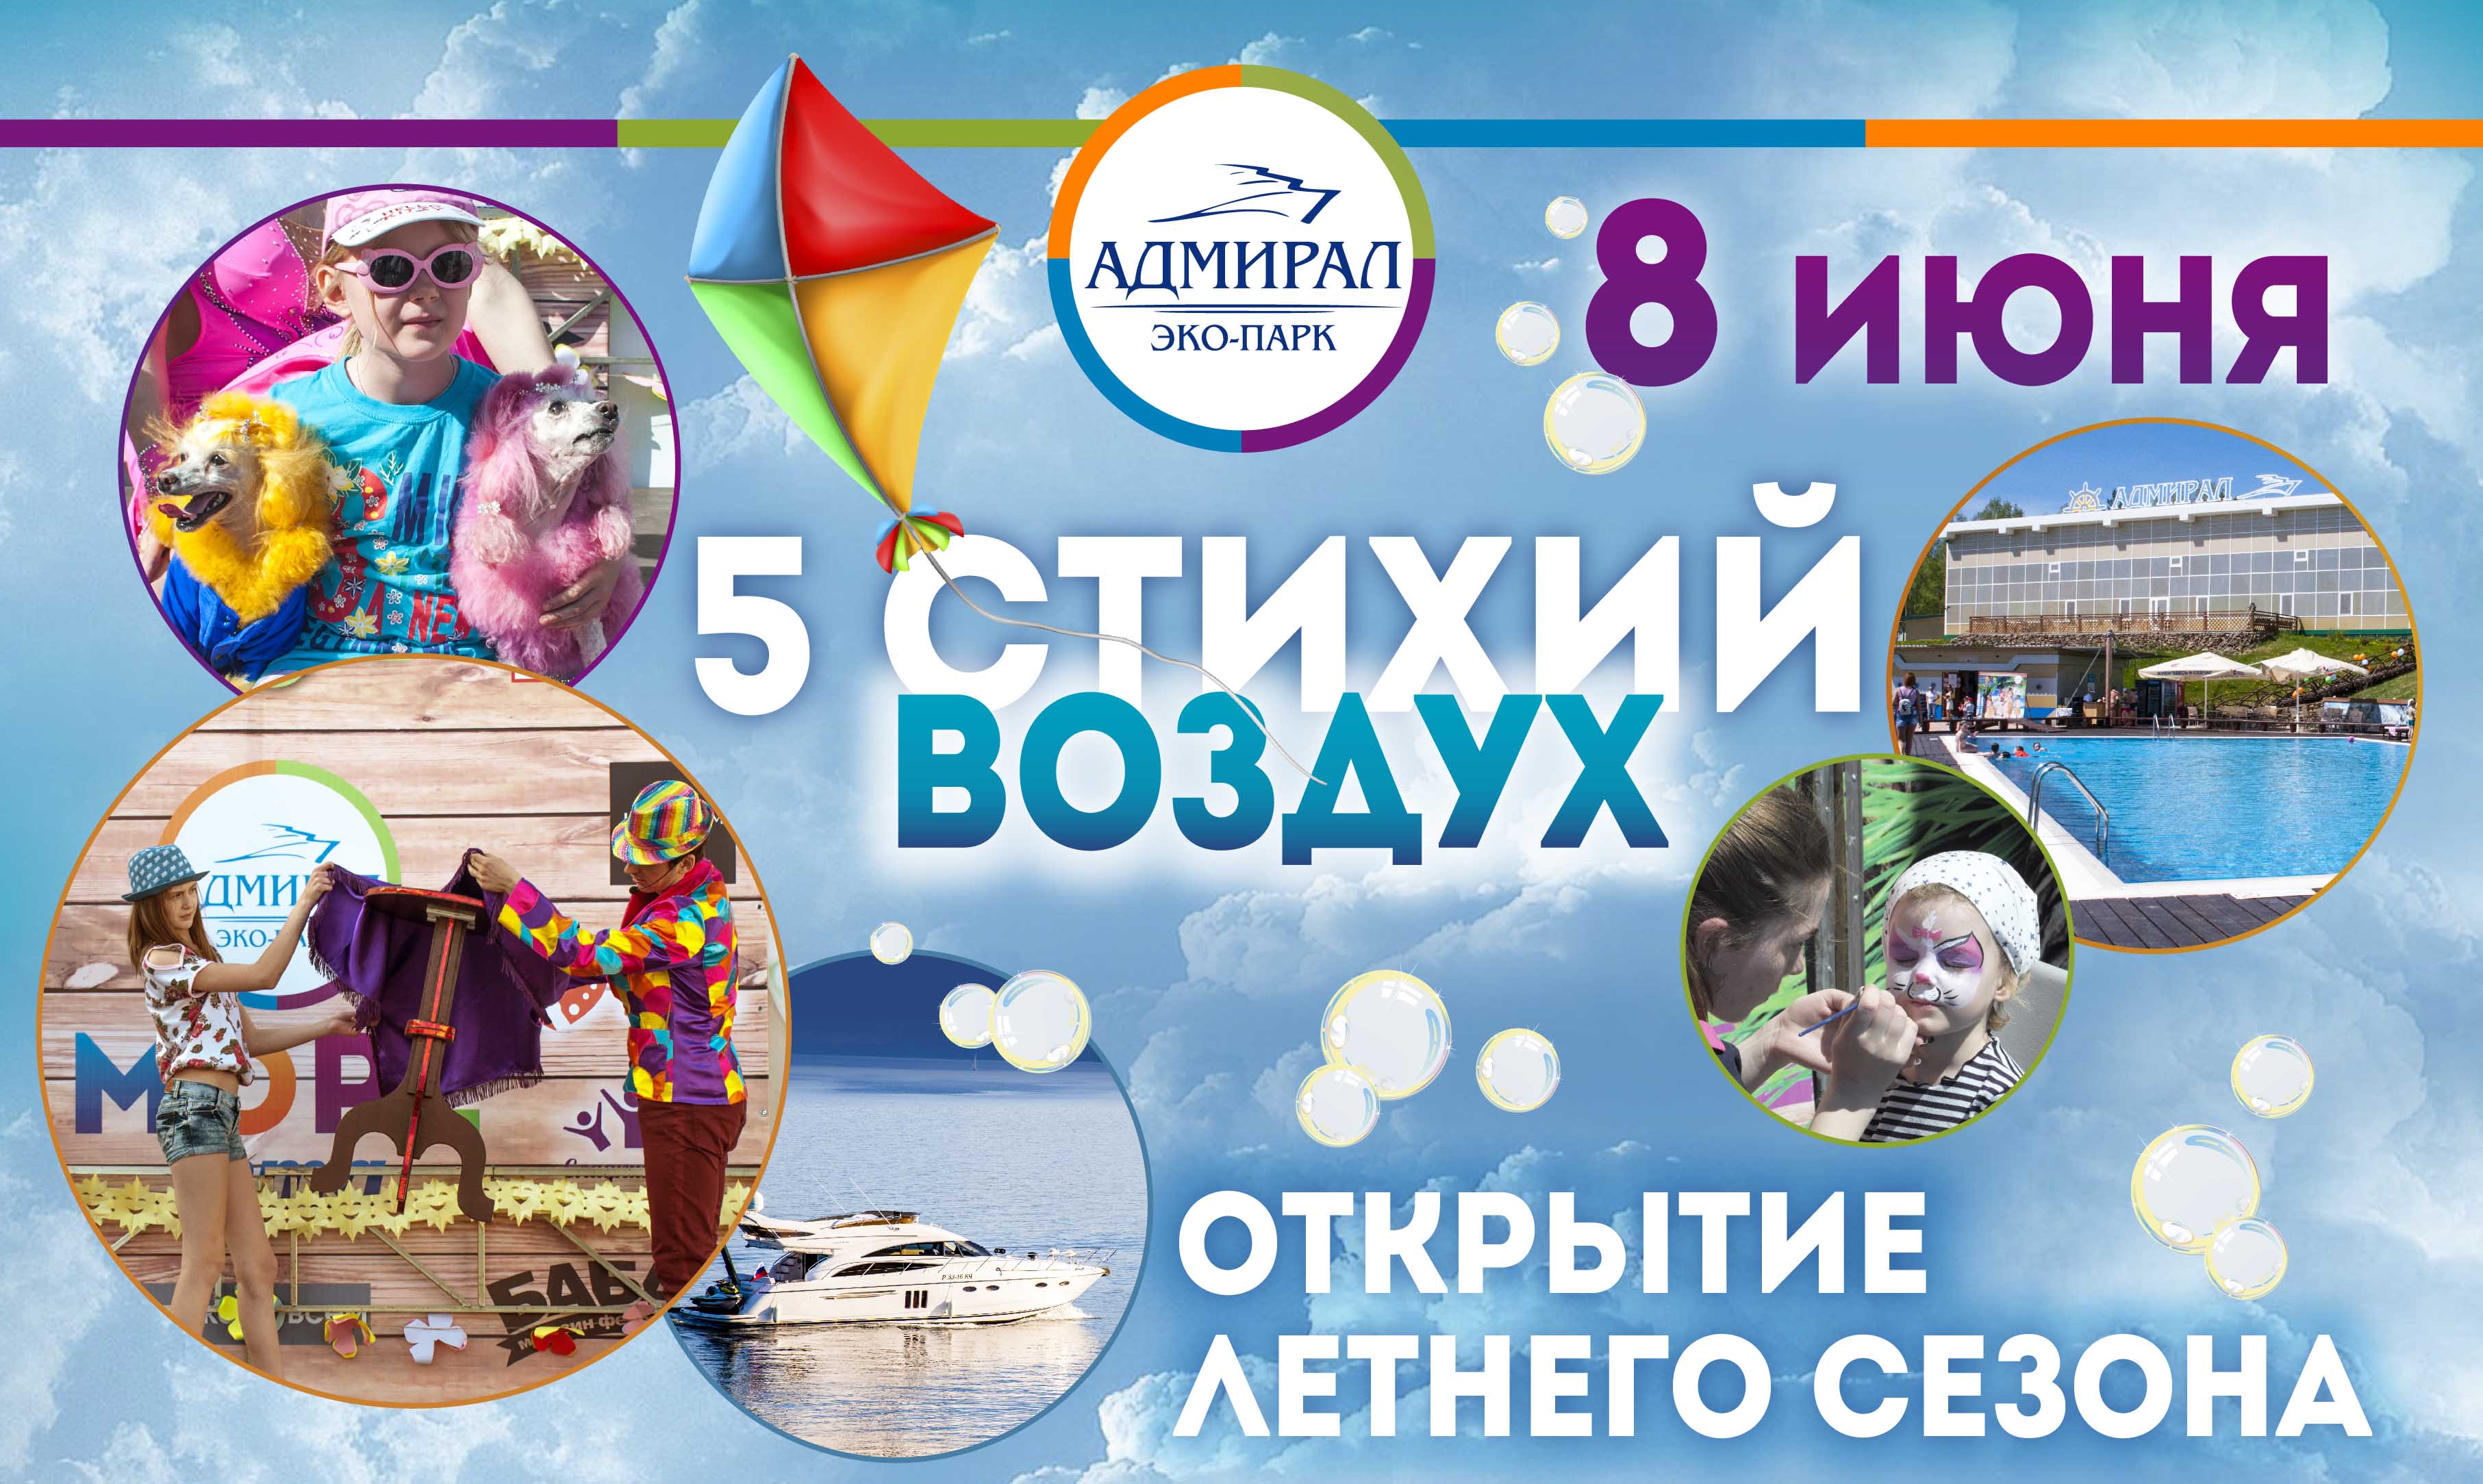 Грандиозное открытие пятого летнего сезона! в Красноярске, Эко-Парк Адмирал